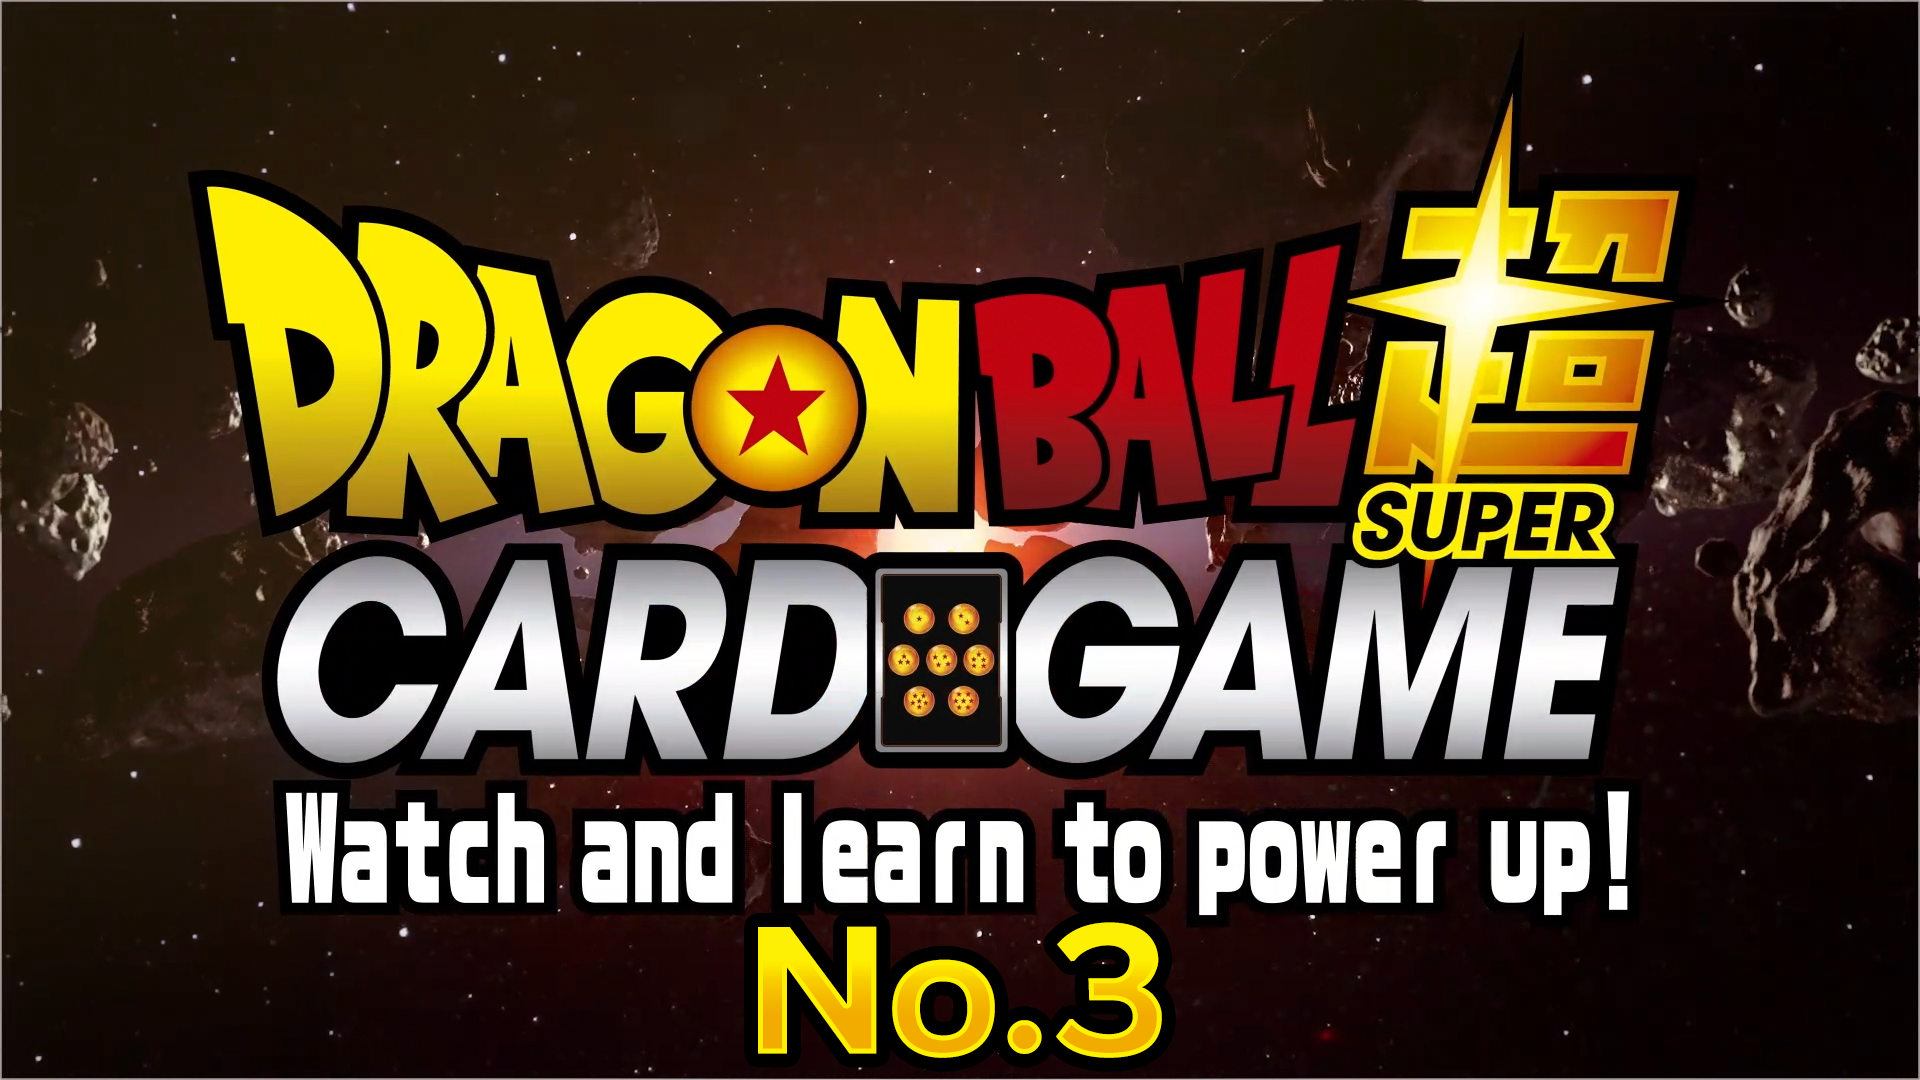 Dragon Ball Super Card Game: Regardez et apprenez à vous mettre sous tension ! n ° 3